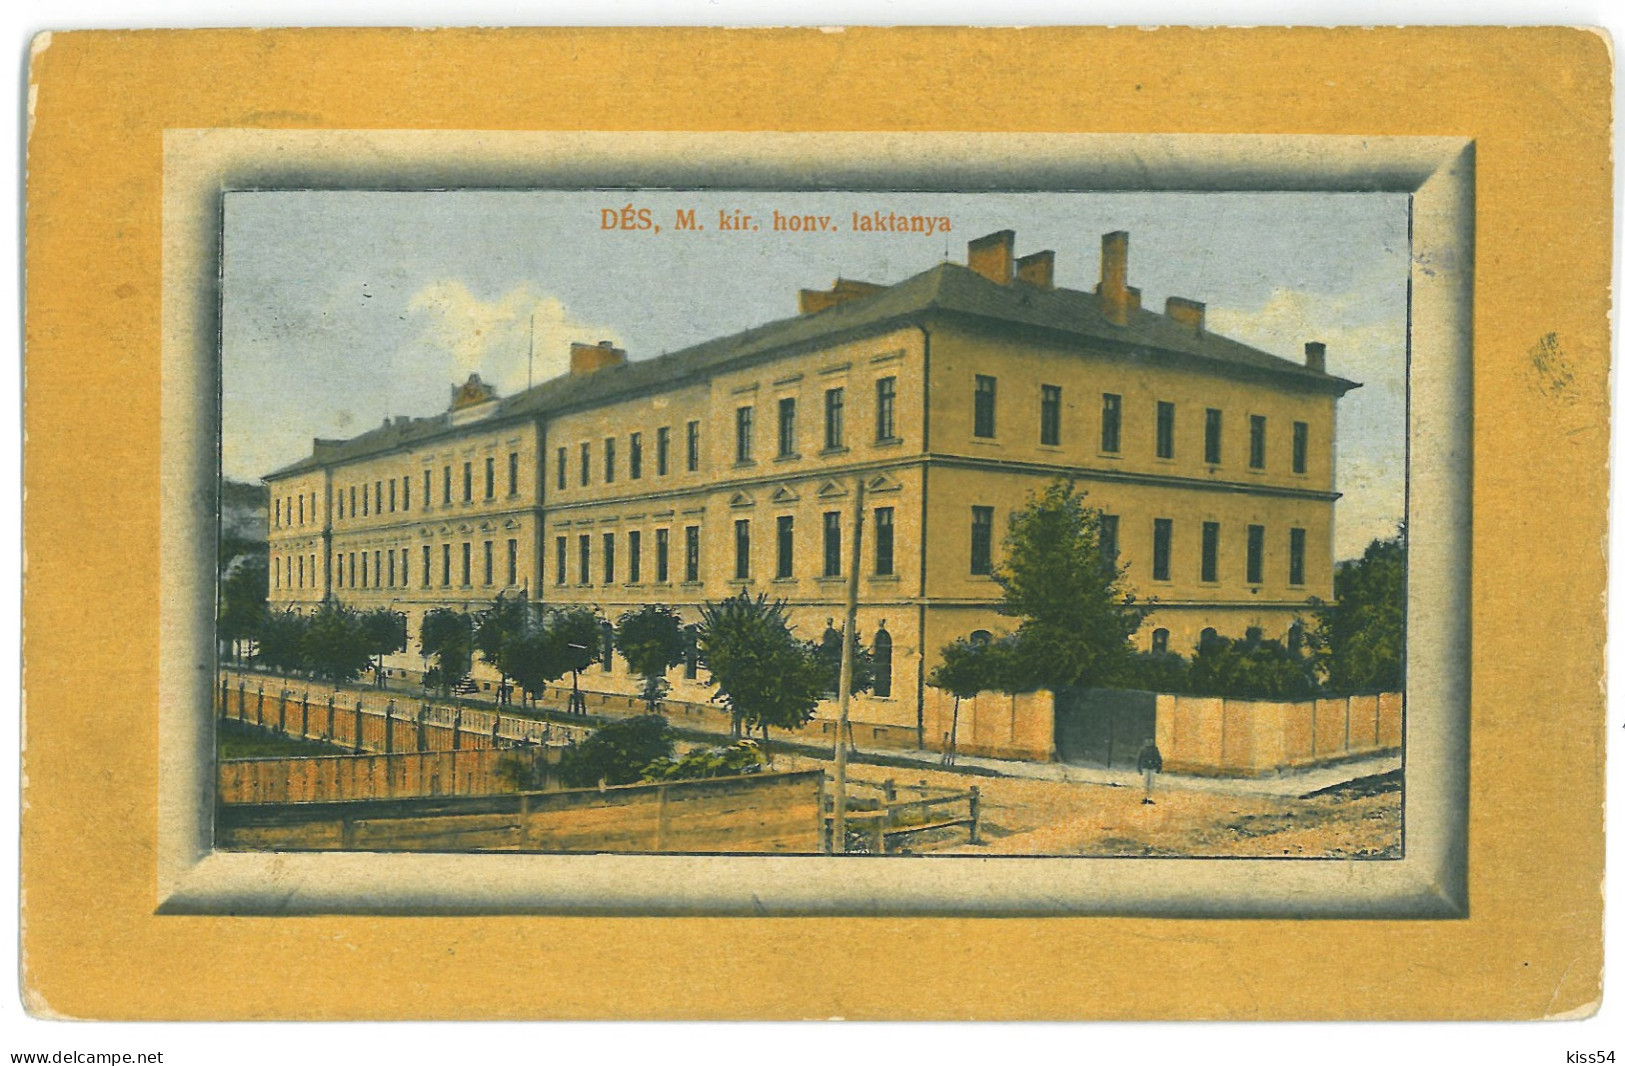 RO 69 - 22740 DEJ, Cluj, Romania - Old Postcard - Used - 1913 - Romania